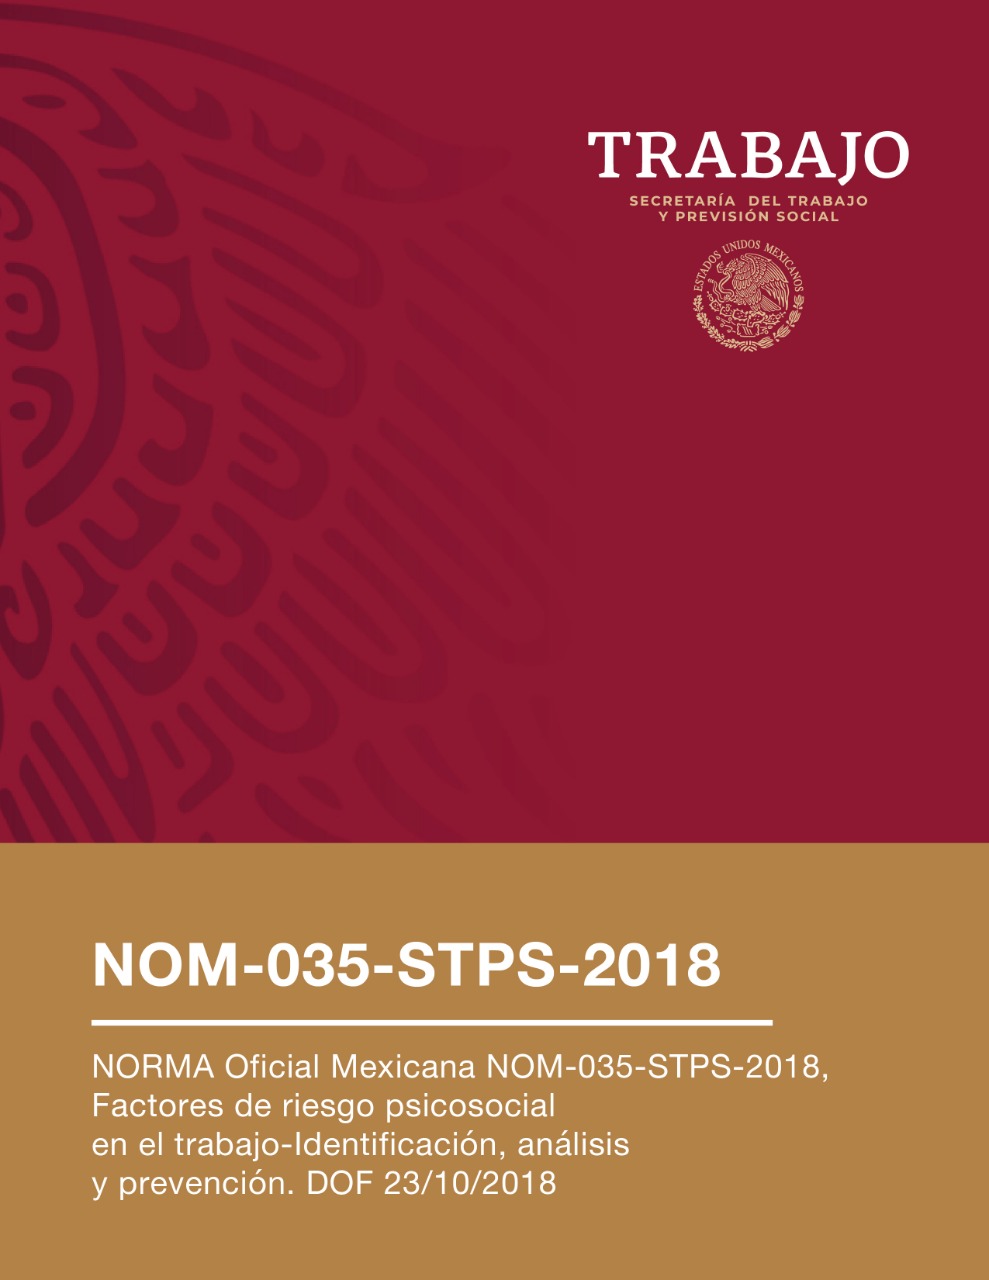 NORMA OFICIAL MEXICANA NOM-035-STPS-2018